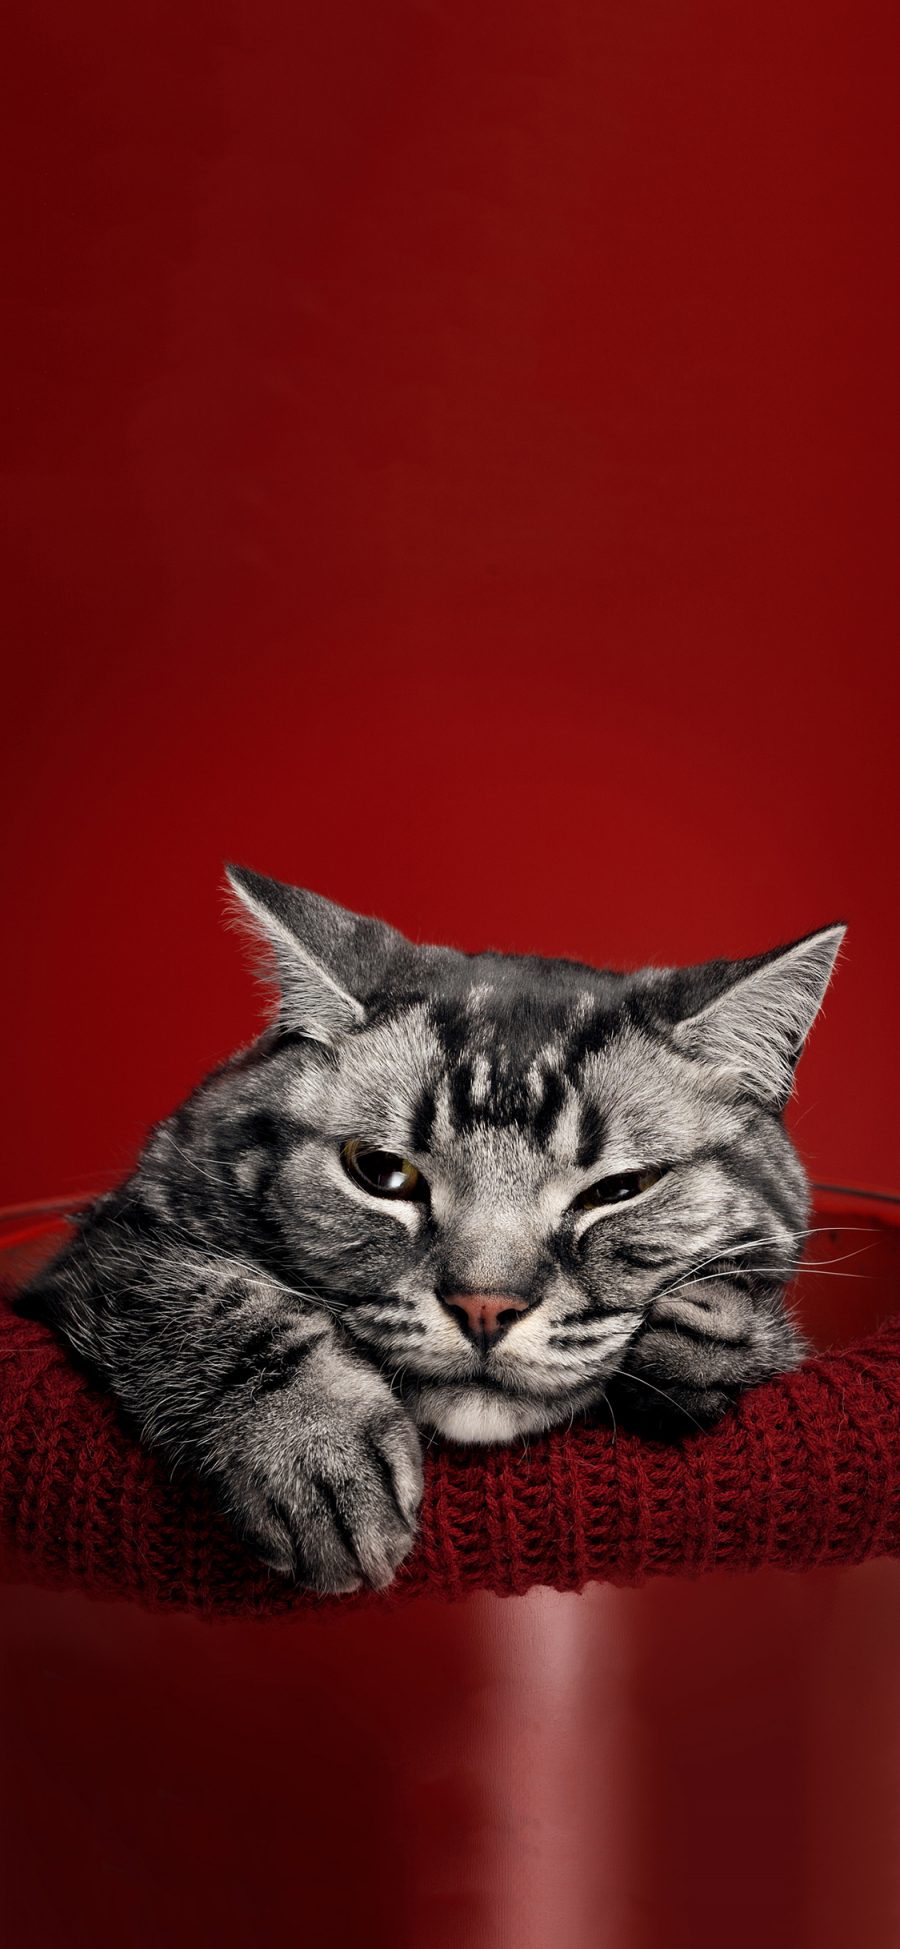 [2436×1125]红色背景 猫咪 喵星人 霸气 苹果手机壁纸图片